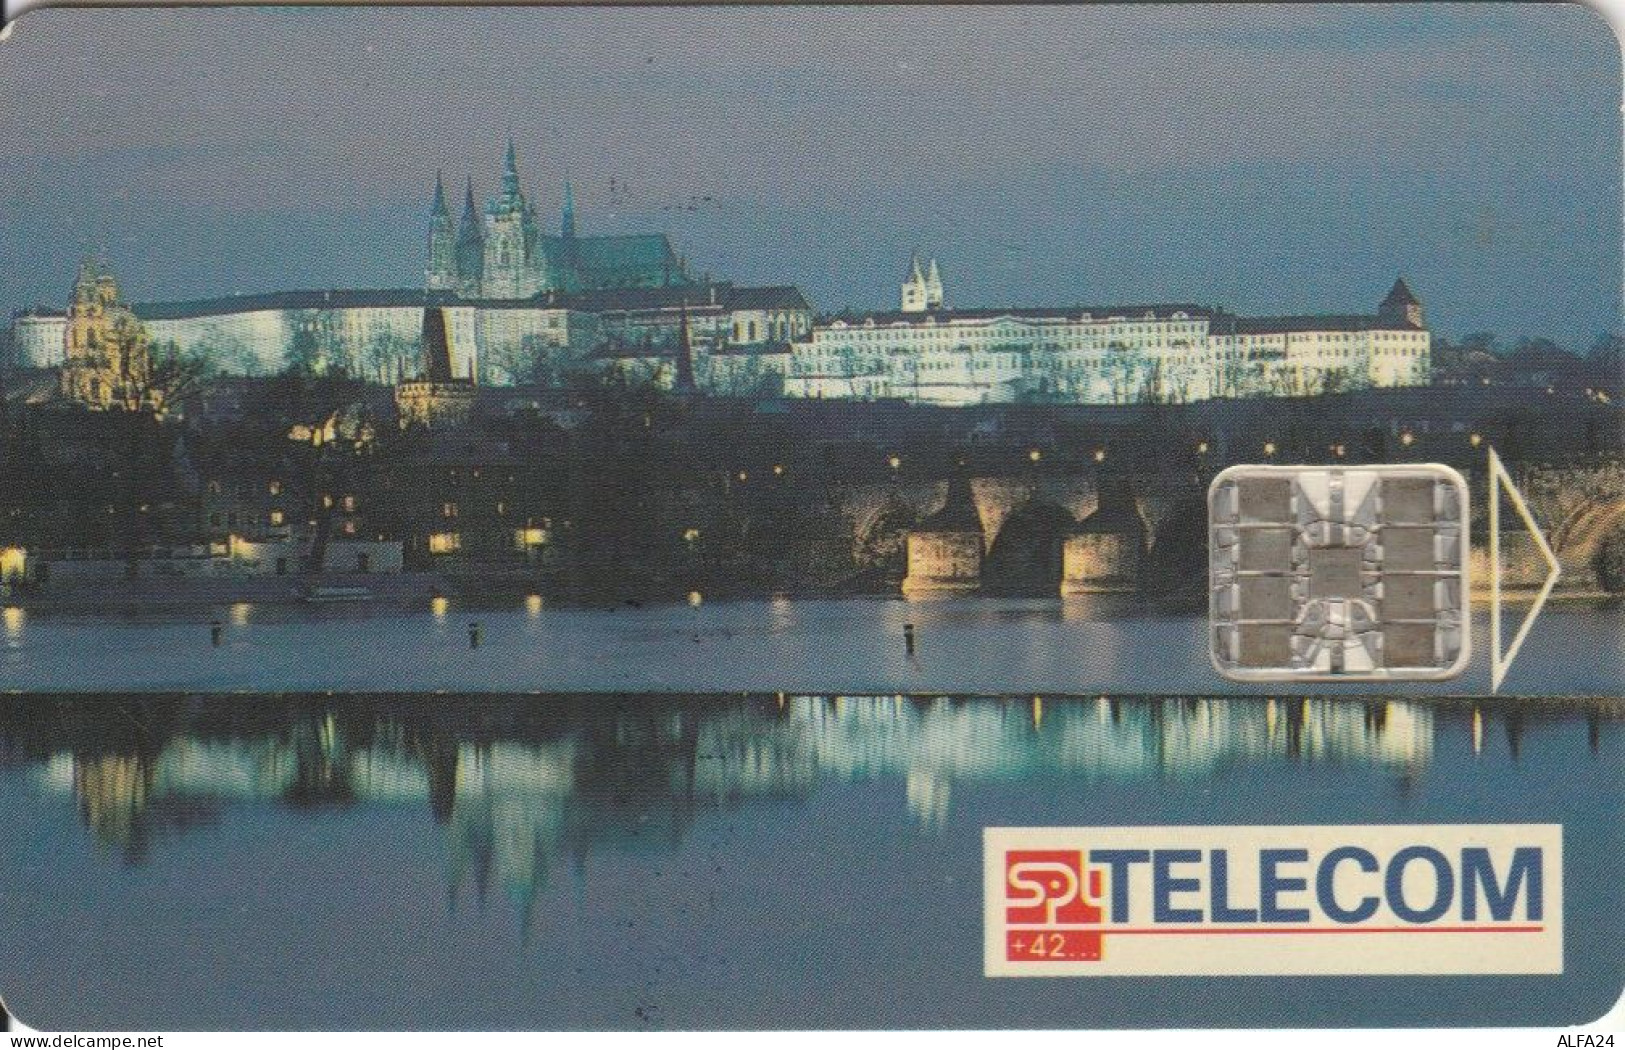 PHONE CARD REPUBBLICA CECA (J.41.1 - Tschechische Rep.